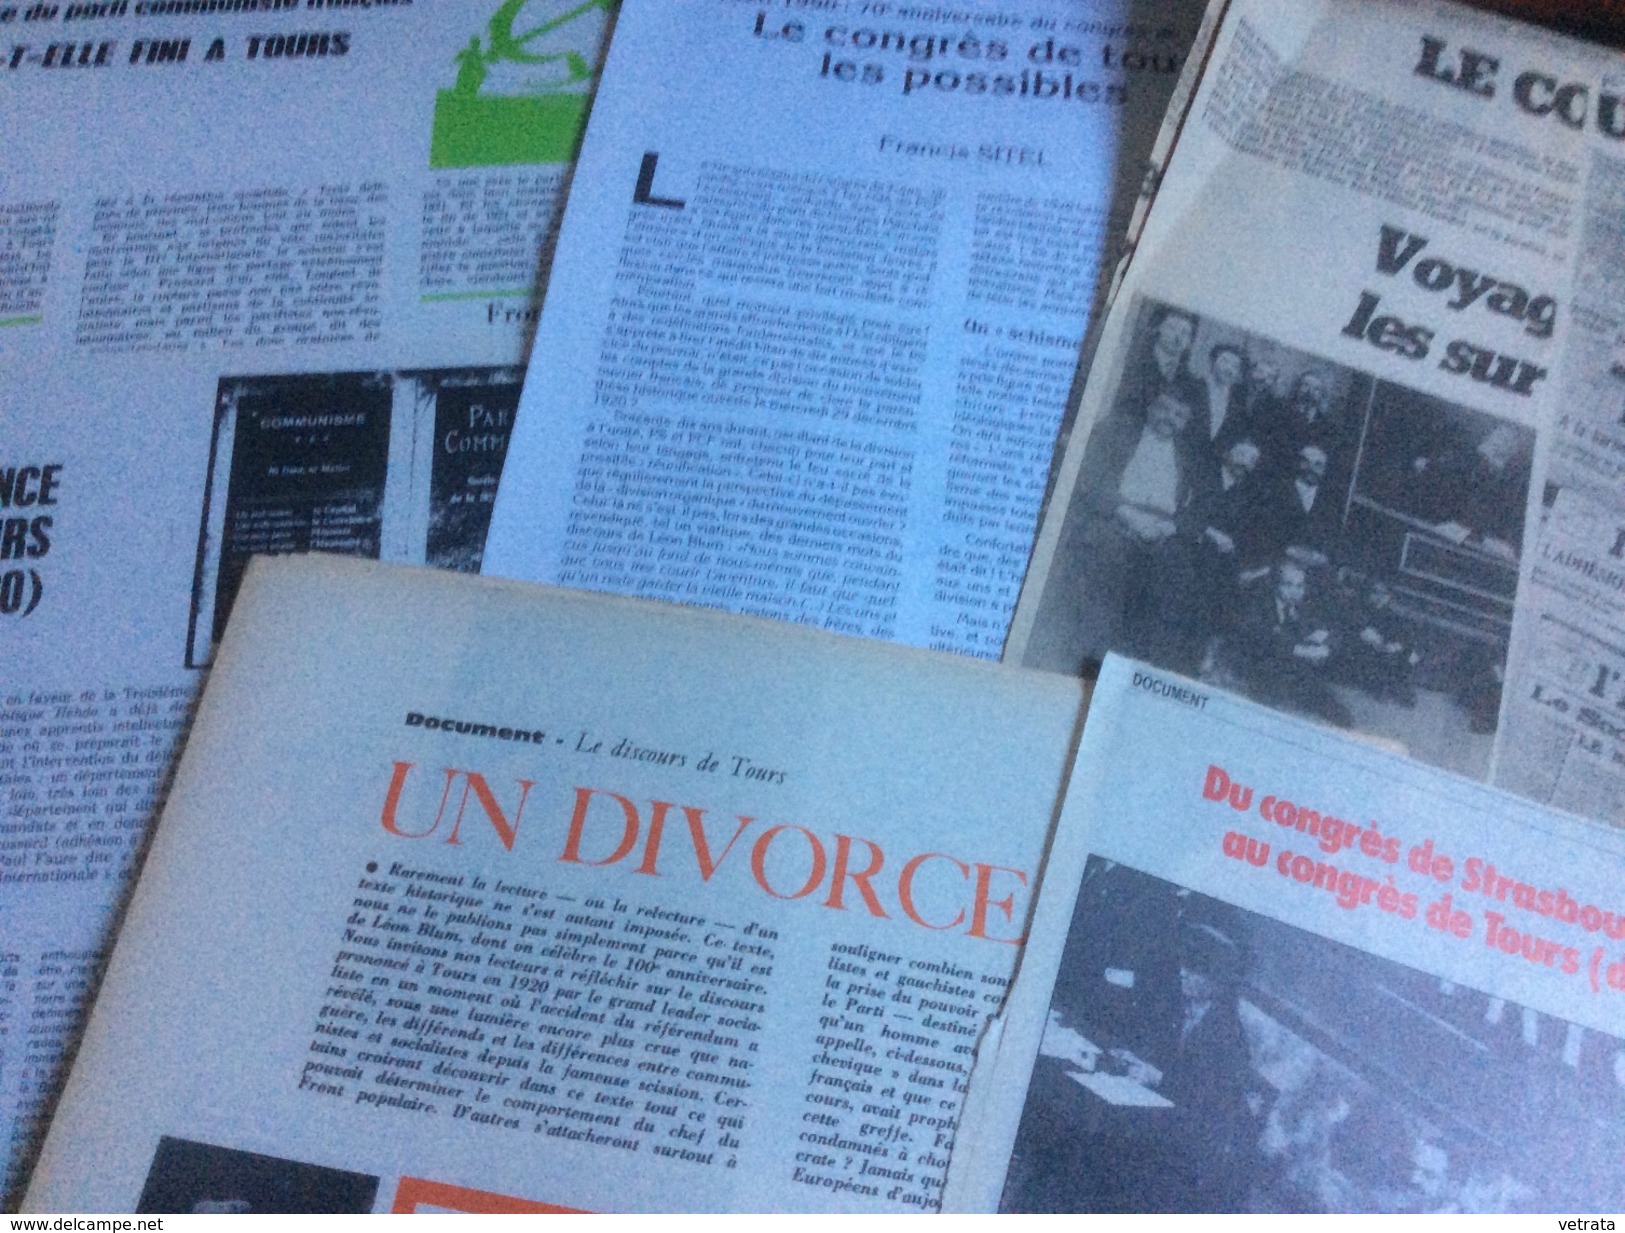 Le Congrès De Tours : 2 Articles De Politique Hebdo (1970)  - 1 Article De F. Sitel (Critique Communiste-1990) - 2 Artic - 1950 - Oggi